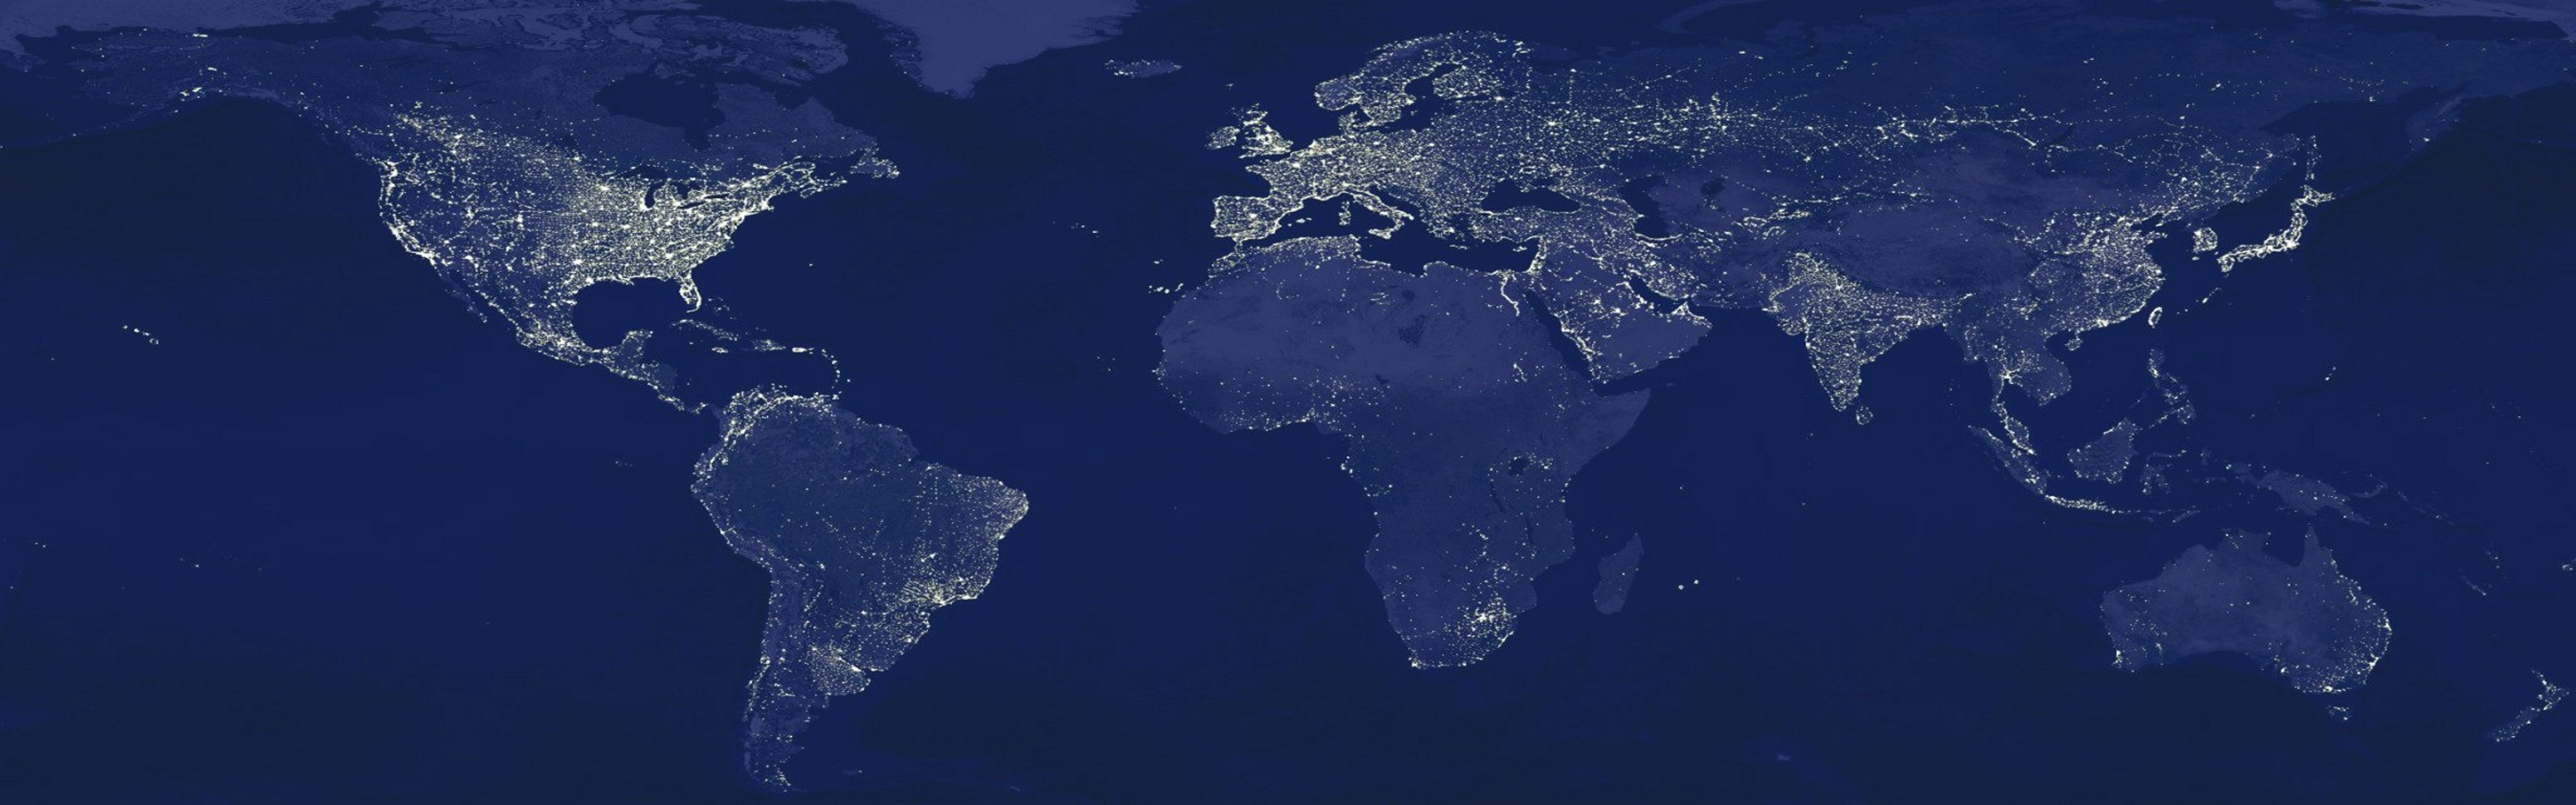 свет, ночь, Земля, глобусы, карты, карта мира - обои на рабочий стол